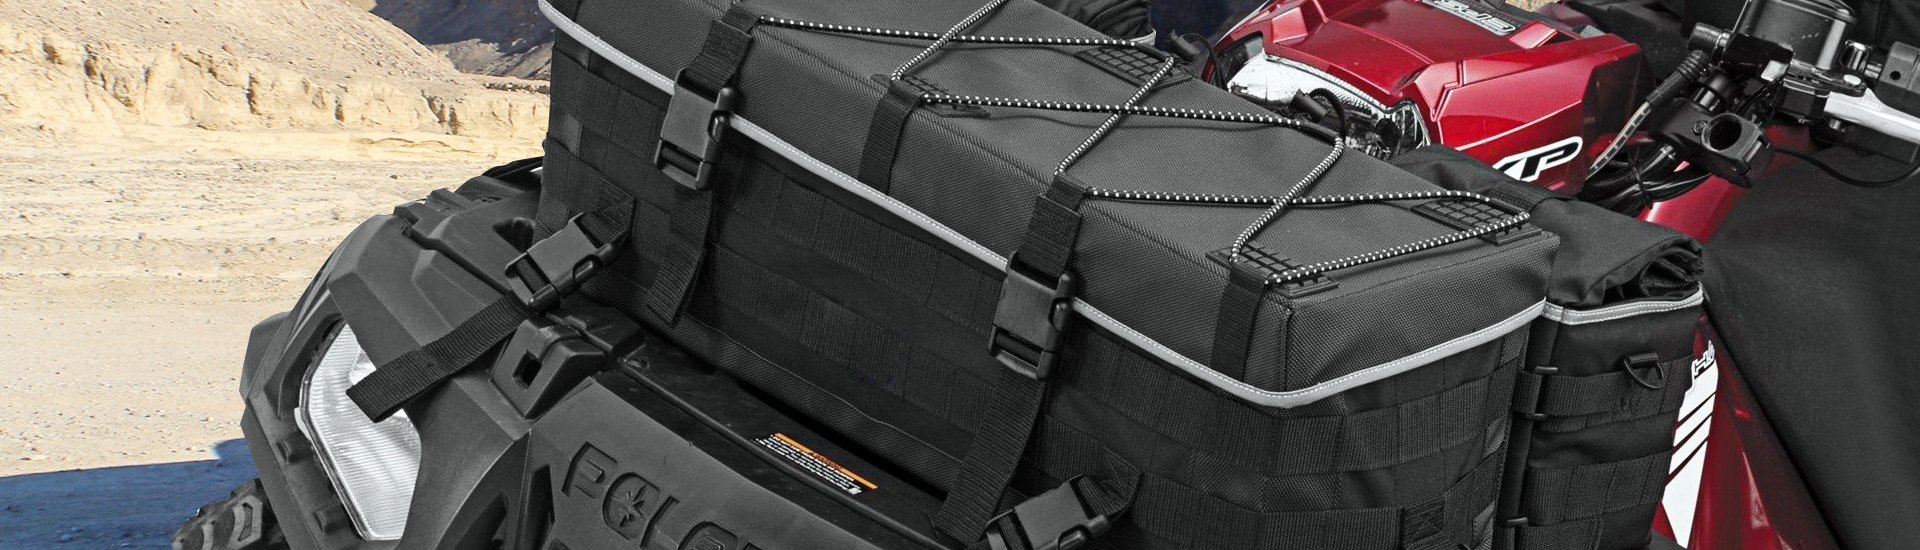 Powersports Luggage Systems & Saddlebags